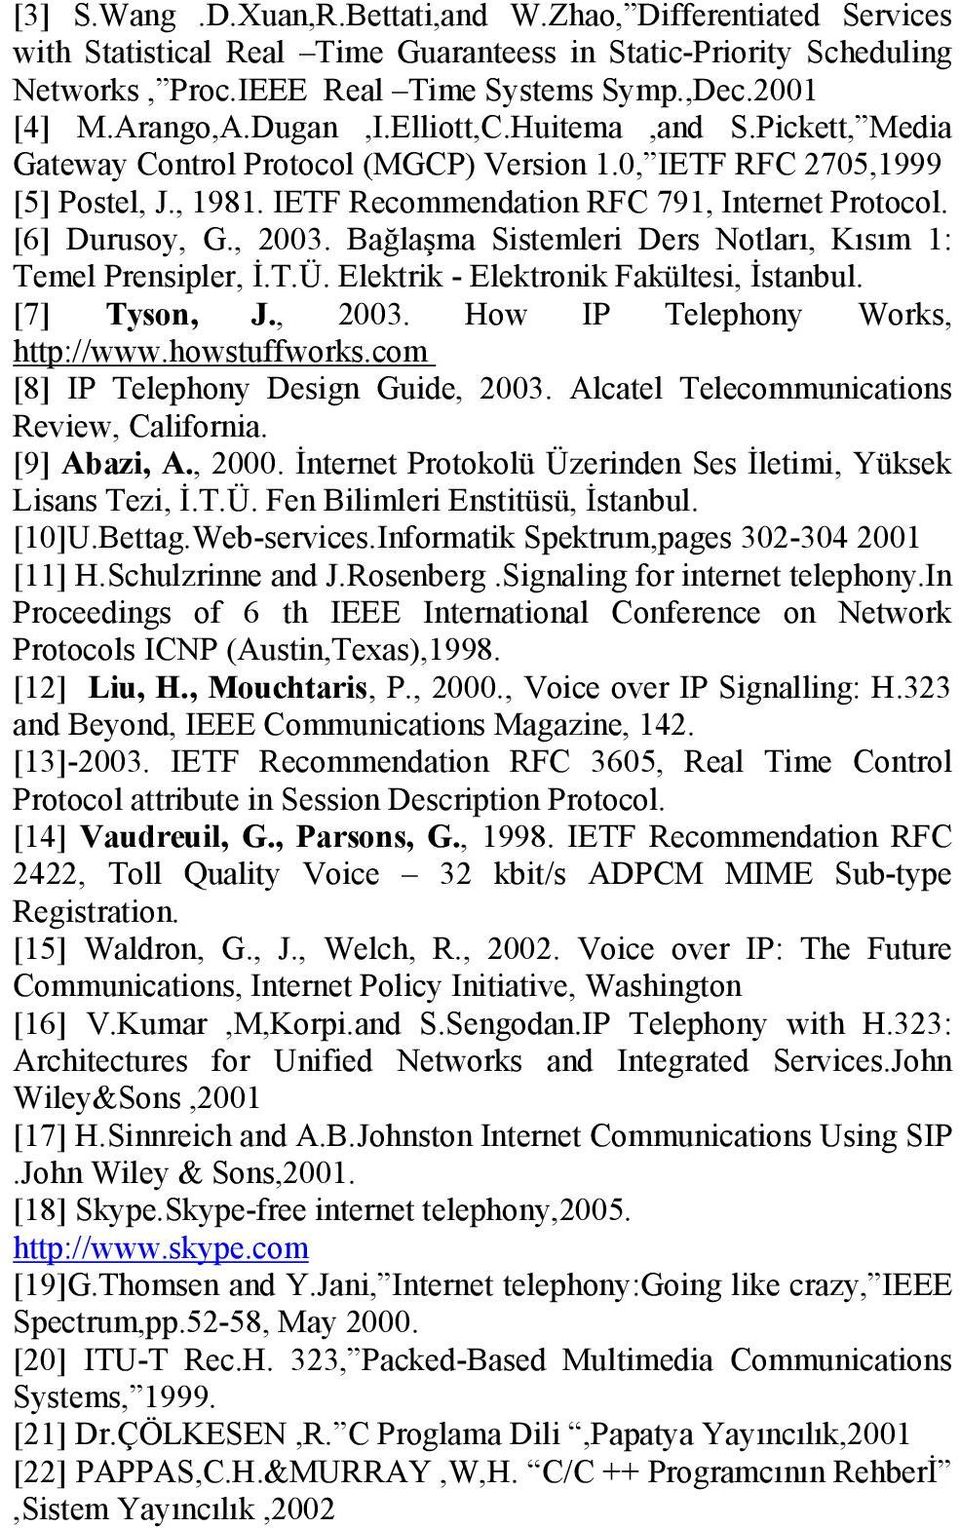 [6] Durusoy, G., 2003. Bağlaşma Sistemleri Ders Notları, Kısım 1: Temel Prensipler, İ.T.Ü. Elektrik - Elektronik Fakültesi, İstanbul. [7] Tyson, J., 2003. How IP Telephony Works, http://www.